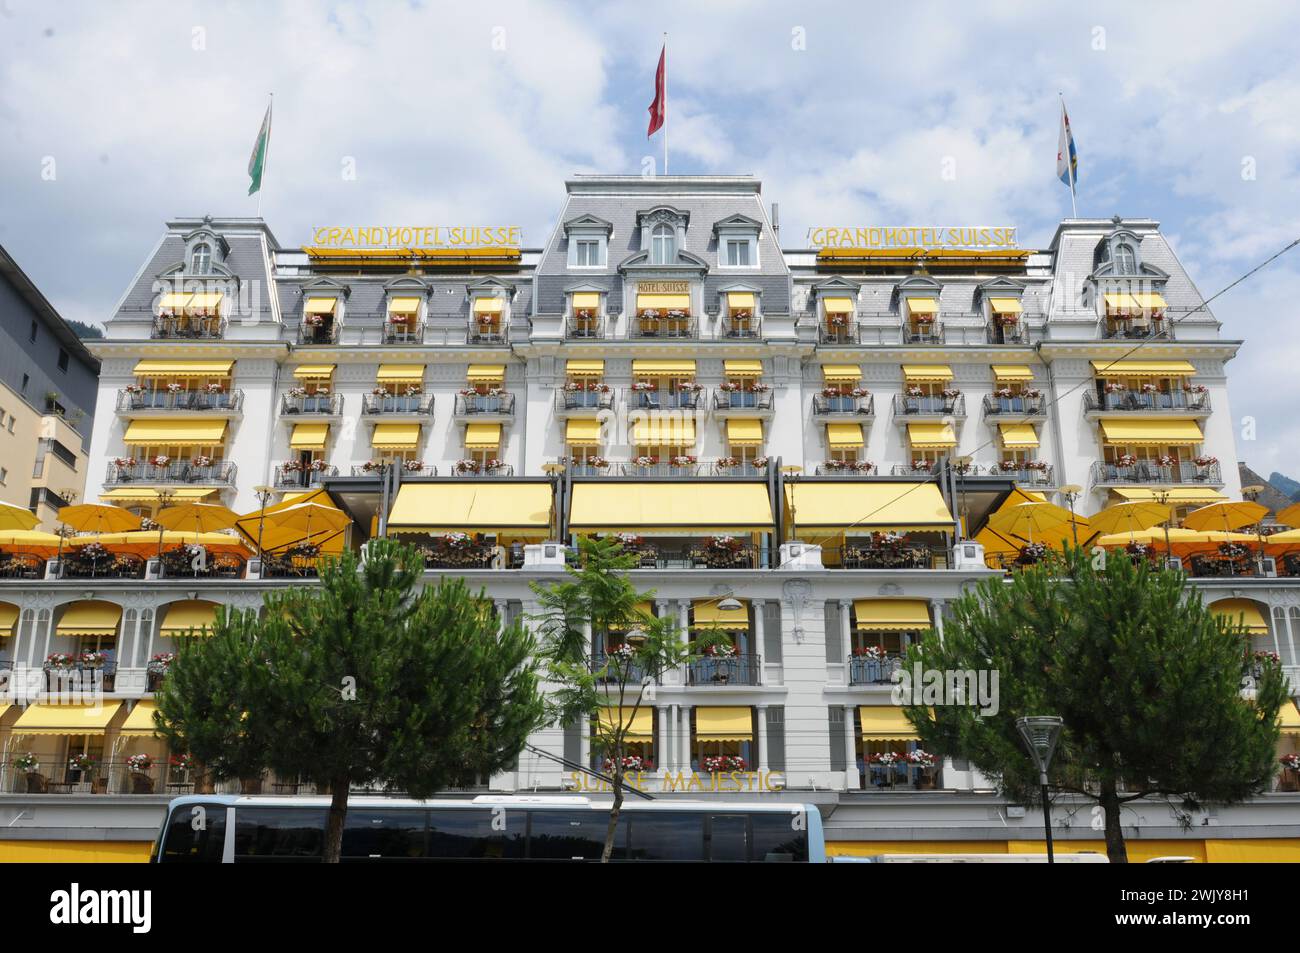 Das Belle Epoque Grand Hotel Majestic in Montreux. Belle Epoque Hotels Majestic at Lake Geneva. Stock Photo